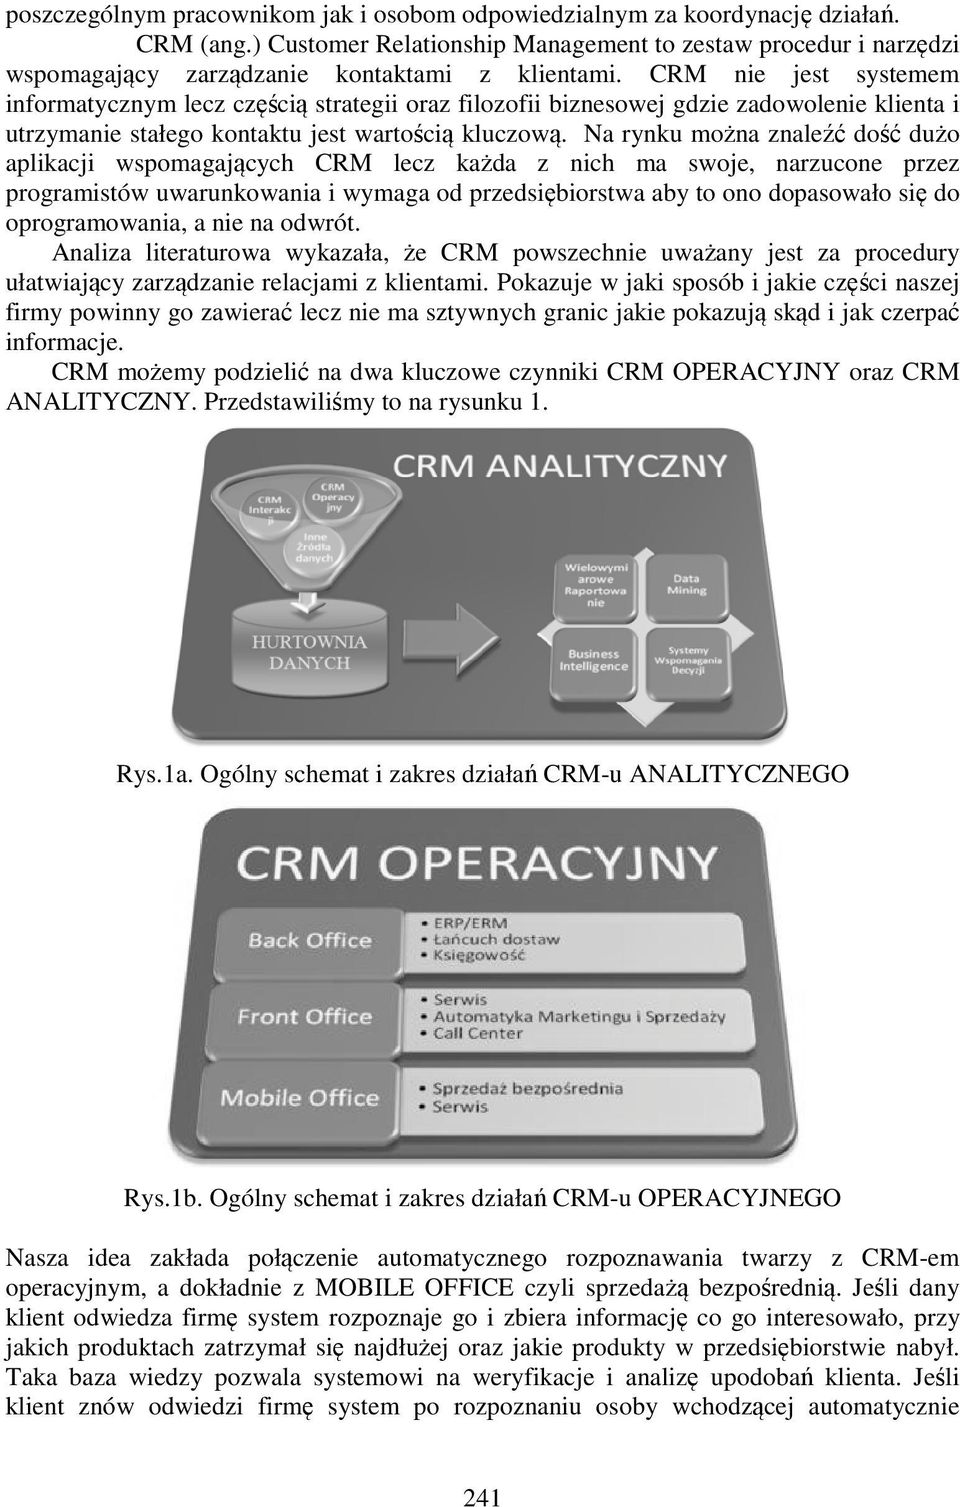 CRM nie jest systemem informatycznym lecz częścią strategii oraz filozofii biznesowej gdzie zadowolenie klienta i utrzymanie stałego kontaktu jest wartością kluczową.